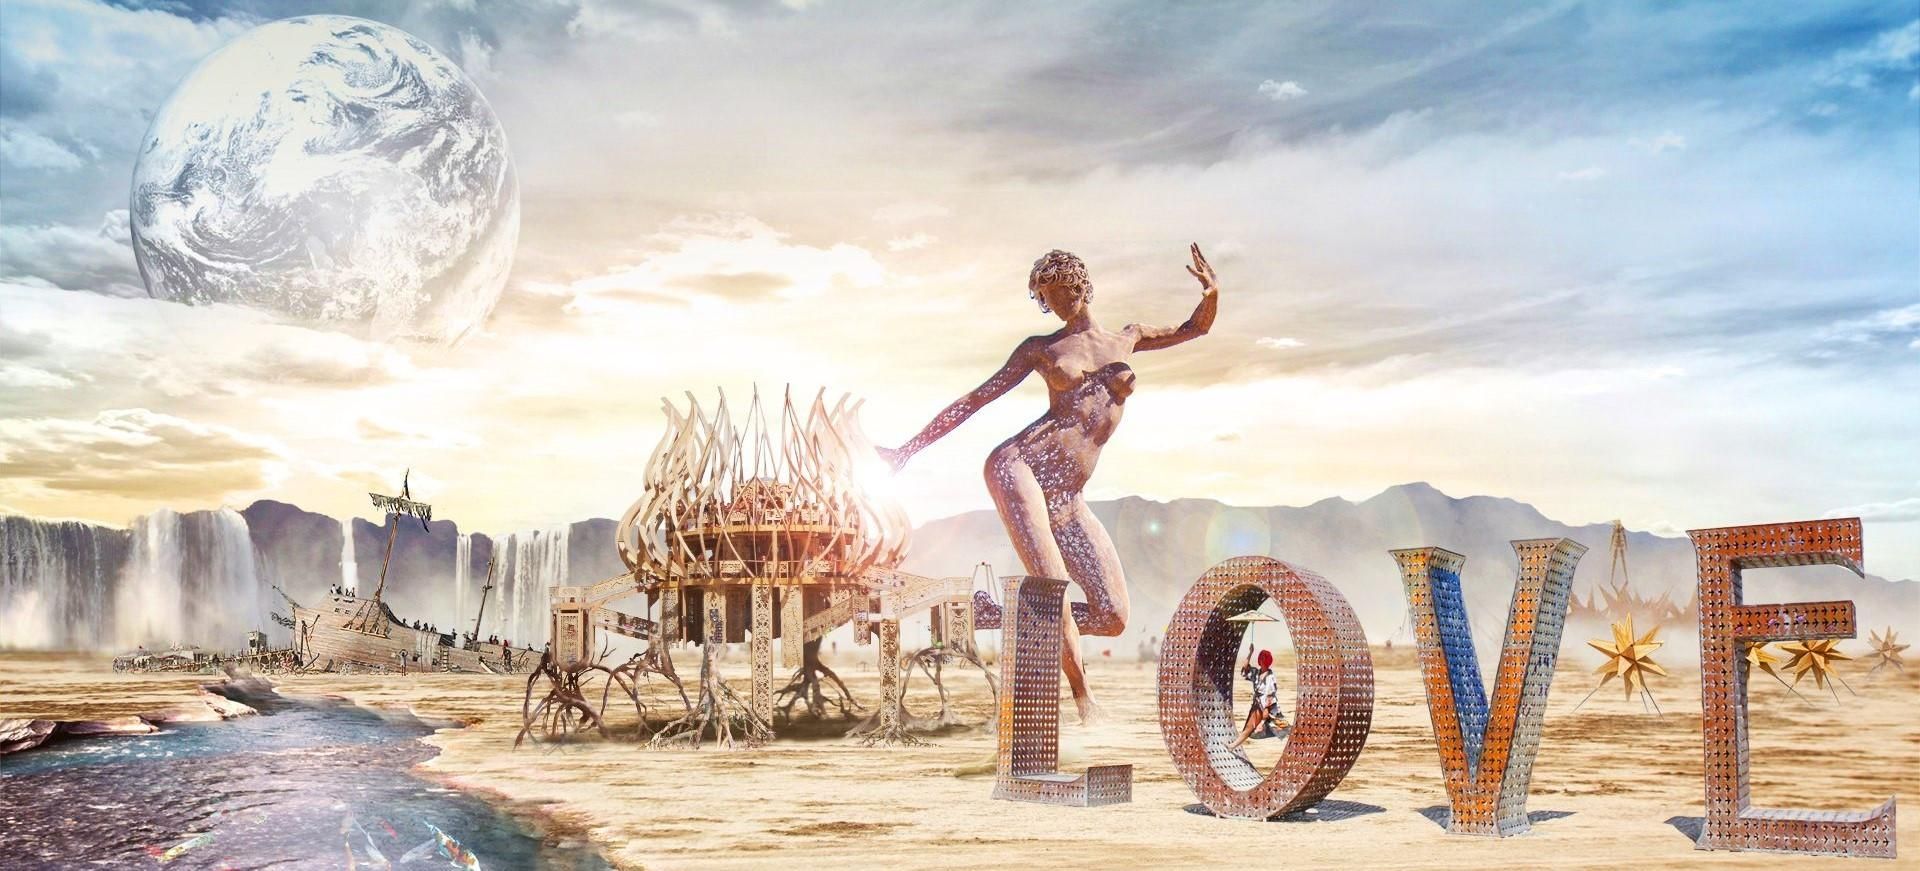 Фестиваль Burning Man 2019: 5 интересных фактов о событии в пустыне